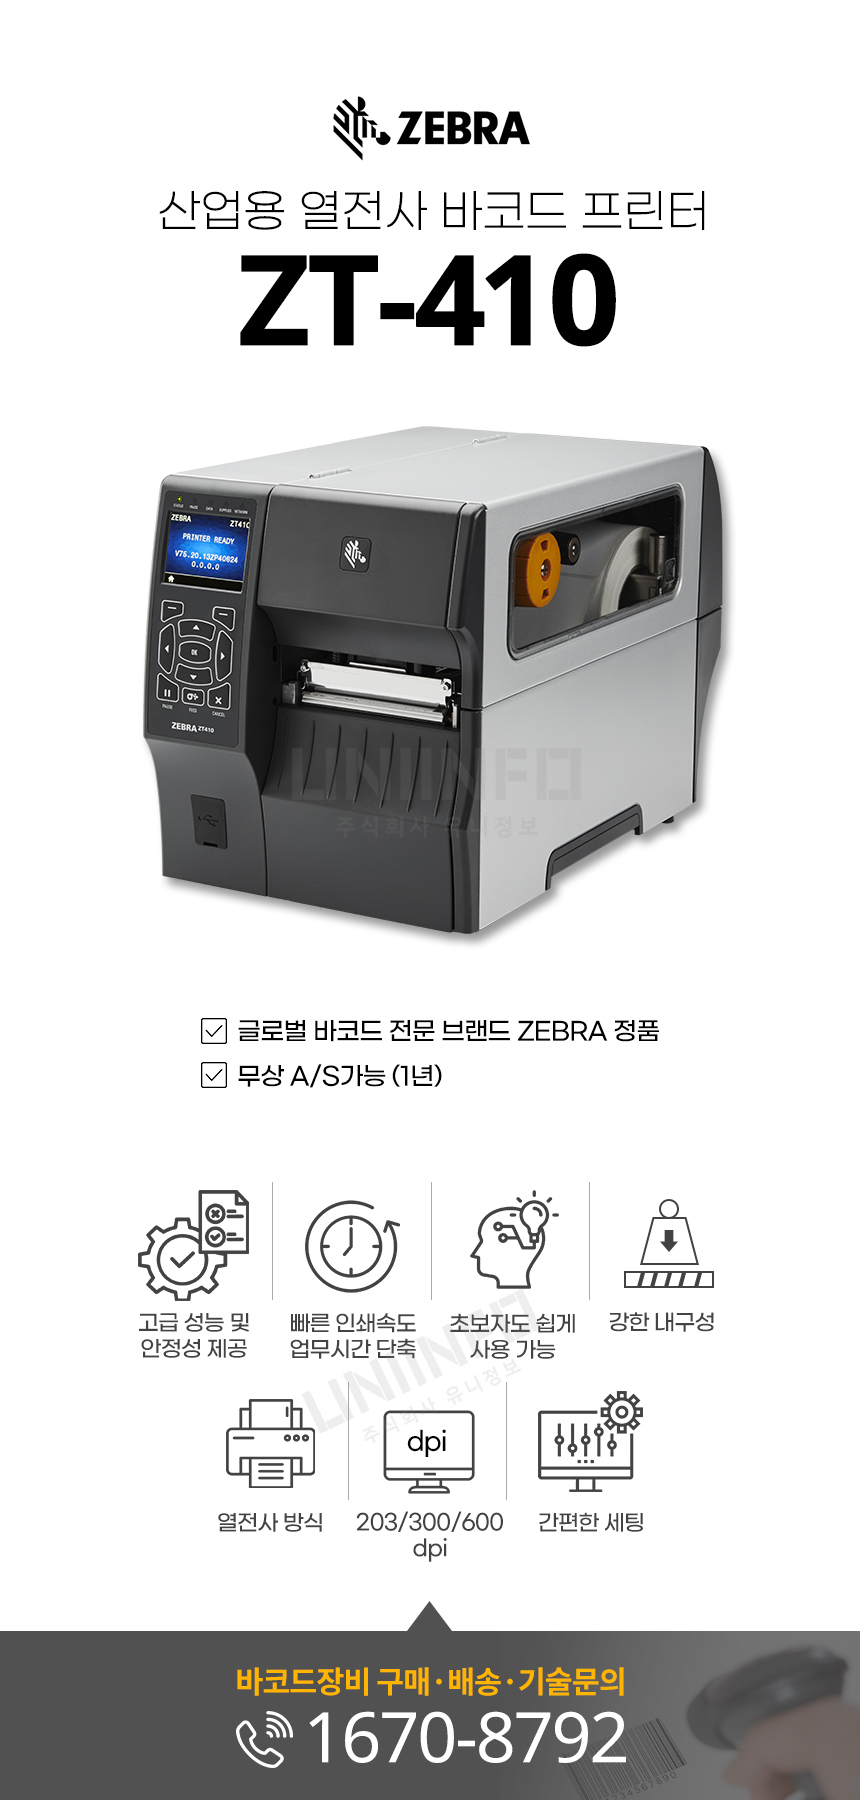 산업용 열전사 바코드 프린터 zt-410 글로벌 바코드 전문 브랜드 zebra 정품  고급 성능 및 안정성 제공 강한 내구성 빠른 인쇄속도 간편한 세팅 203/300/600dpi 해상도